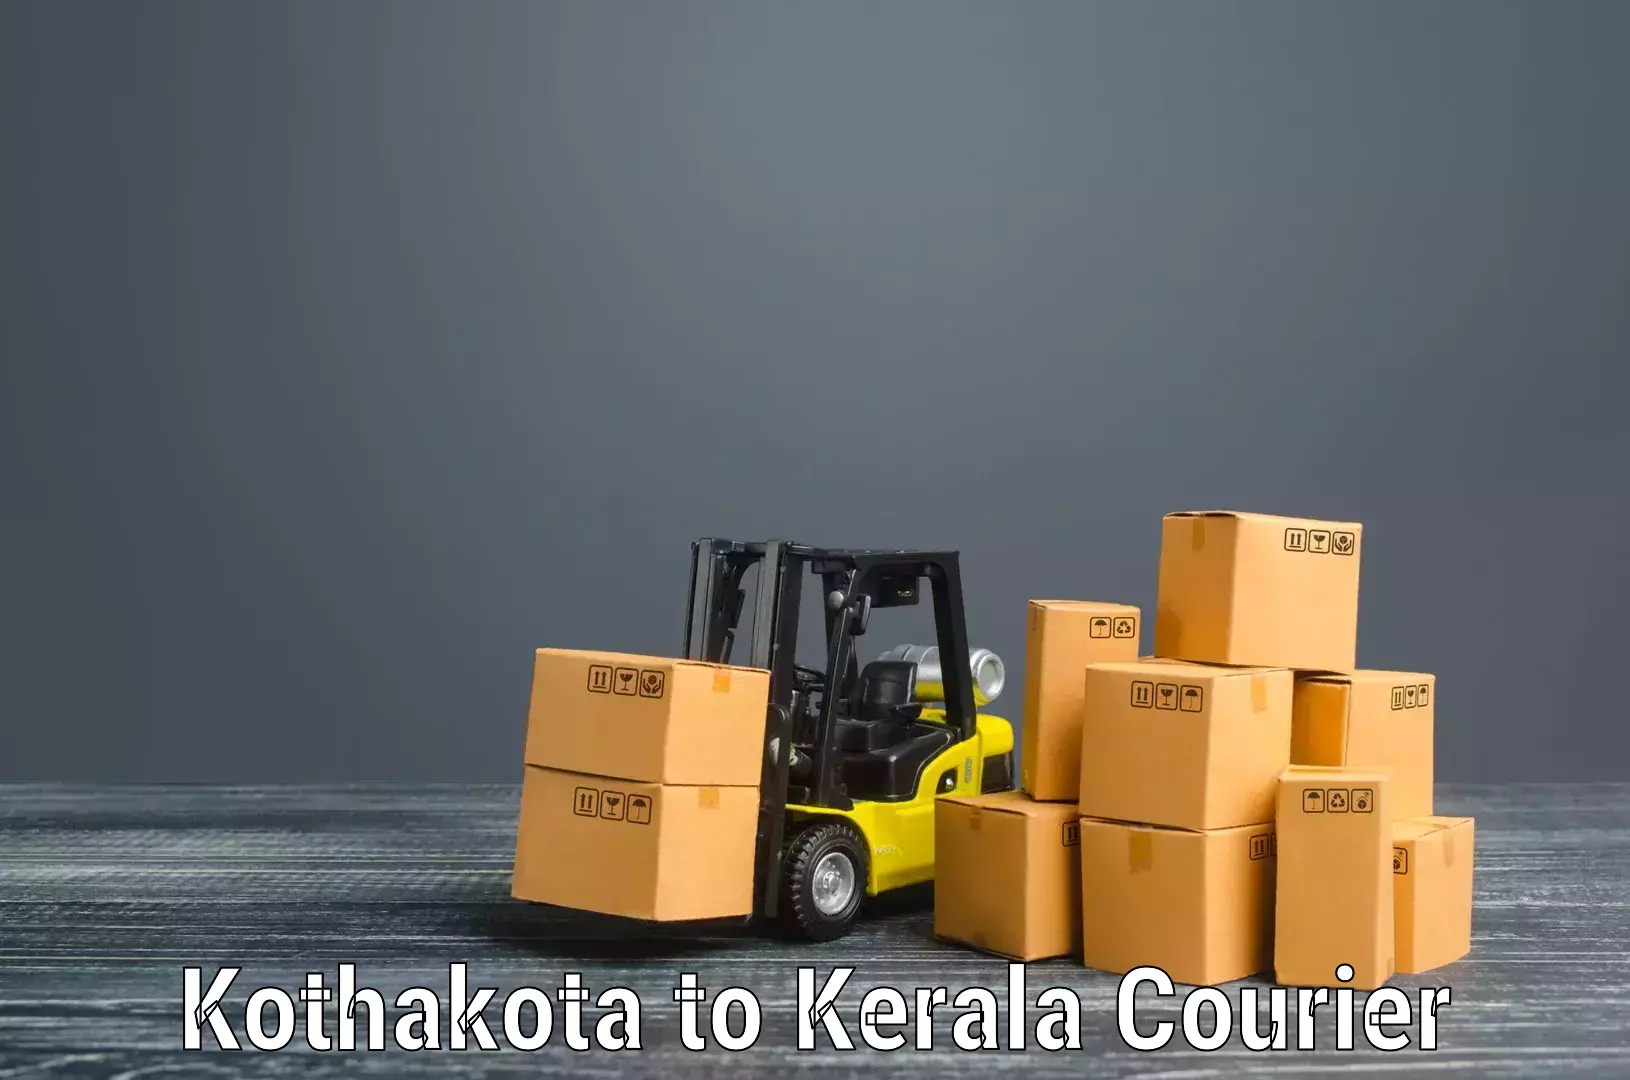 Professional packing and transport Kothakota to Perumbavoor